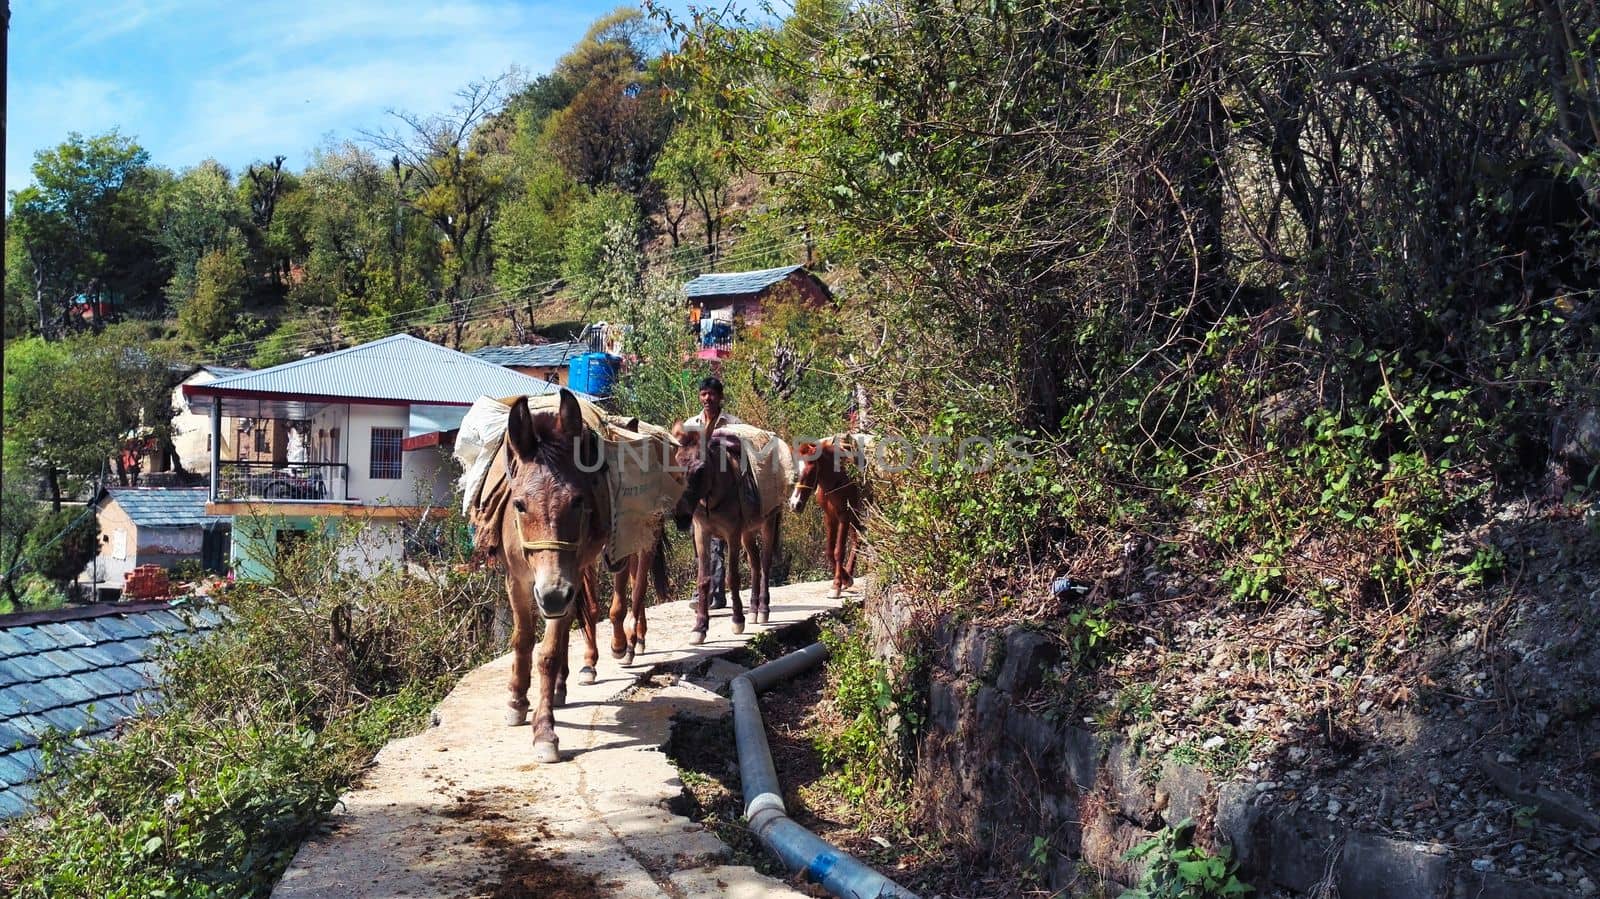 Donkeys Carry Heavy Load on Narrow Road, Dharamshala, India by SweCreatives